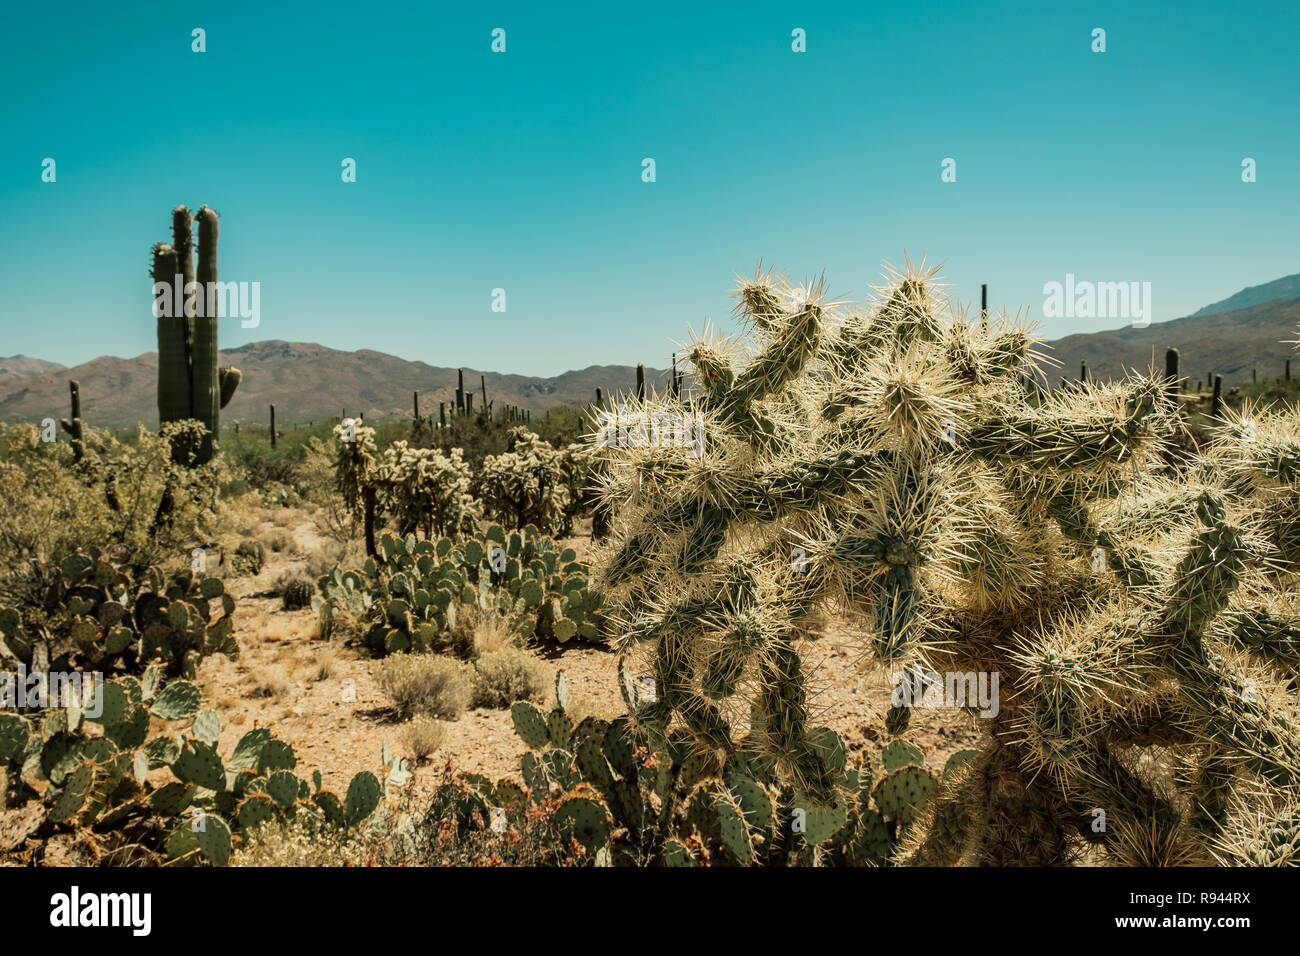 Eine Vielzahl von Kakteen Arten, Cholla Cactus, Feigenkakteen, Saguaro Cactus in der Sonora Wüste im Saguaro National Park in Tuscon, Arizona, USA Stockfoto